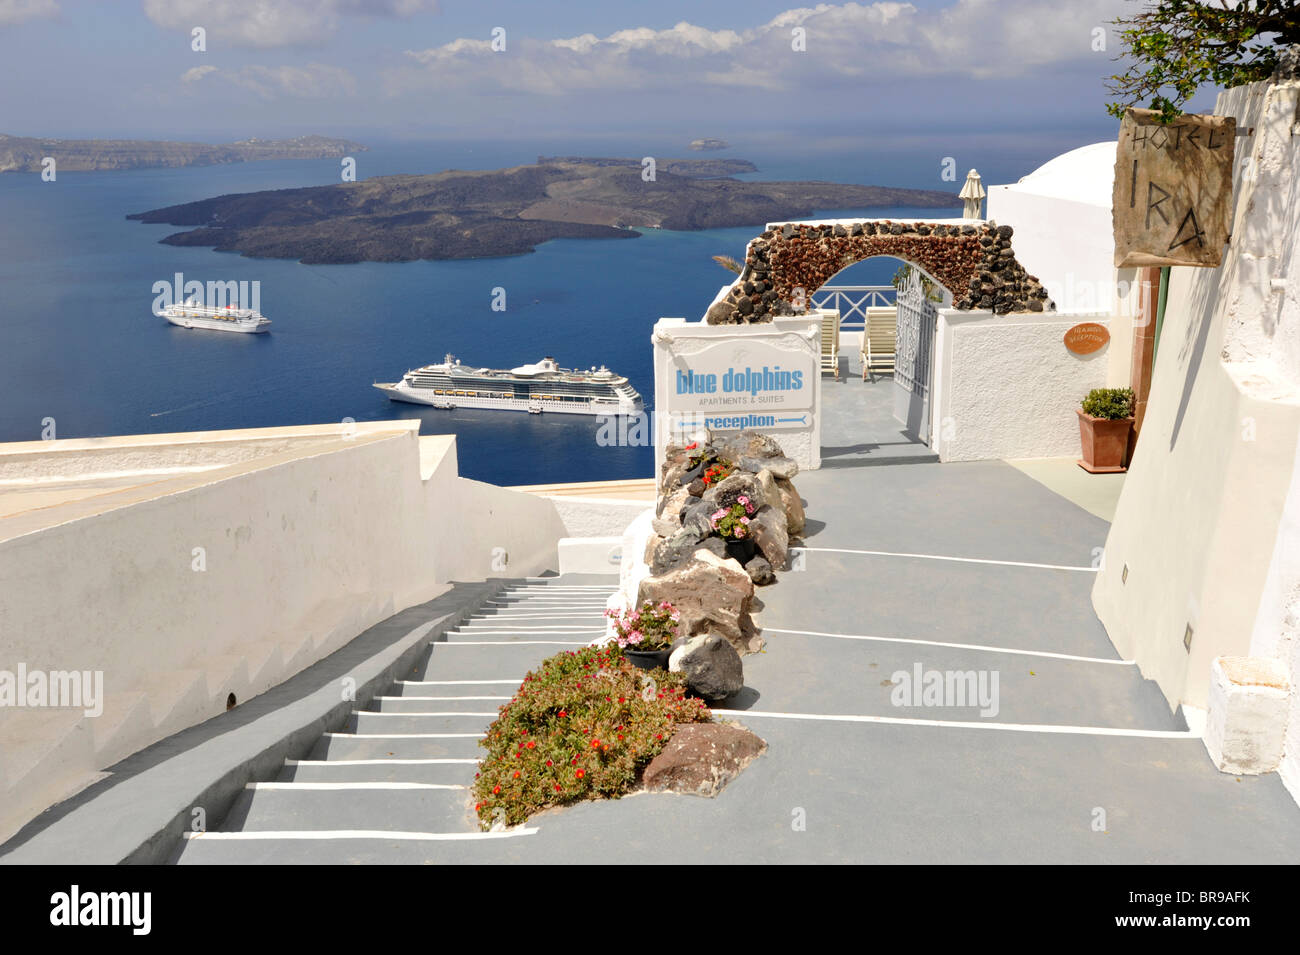 View over the Caldera, Santorini Cyclades Greece Stock Photo